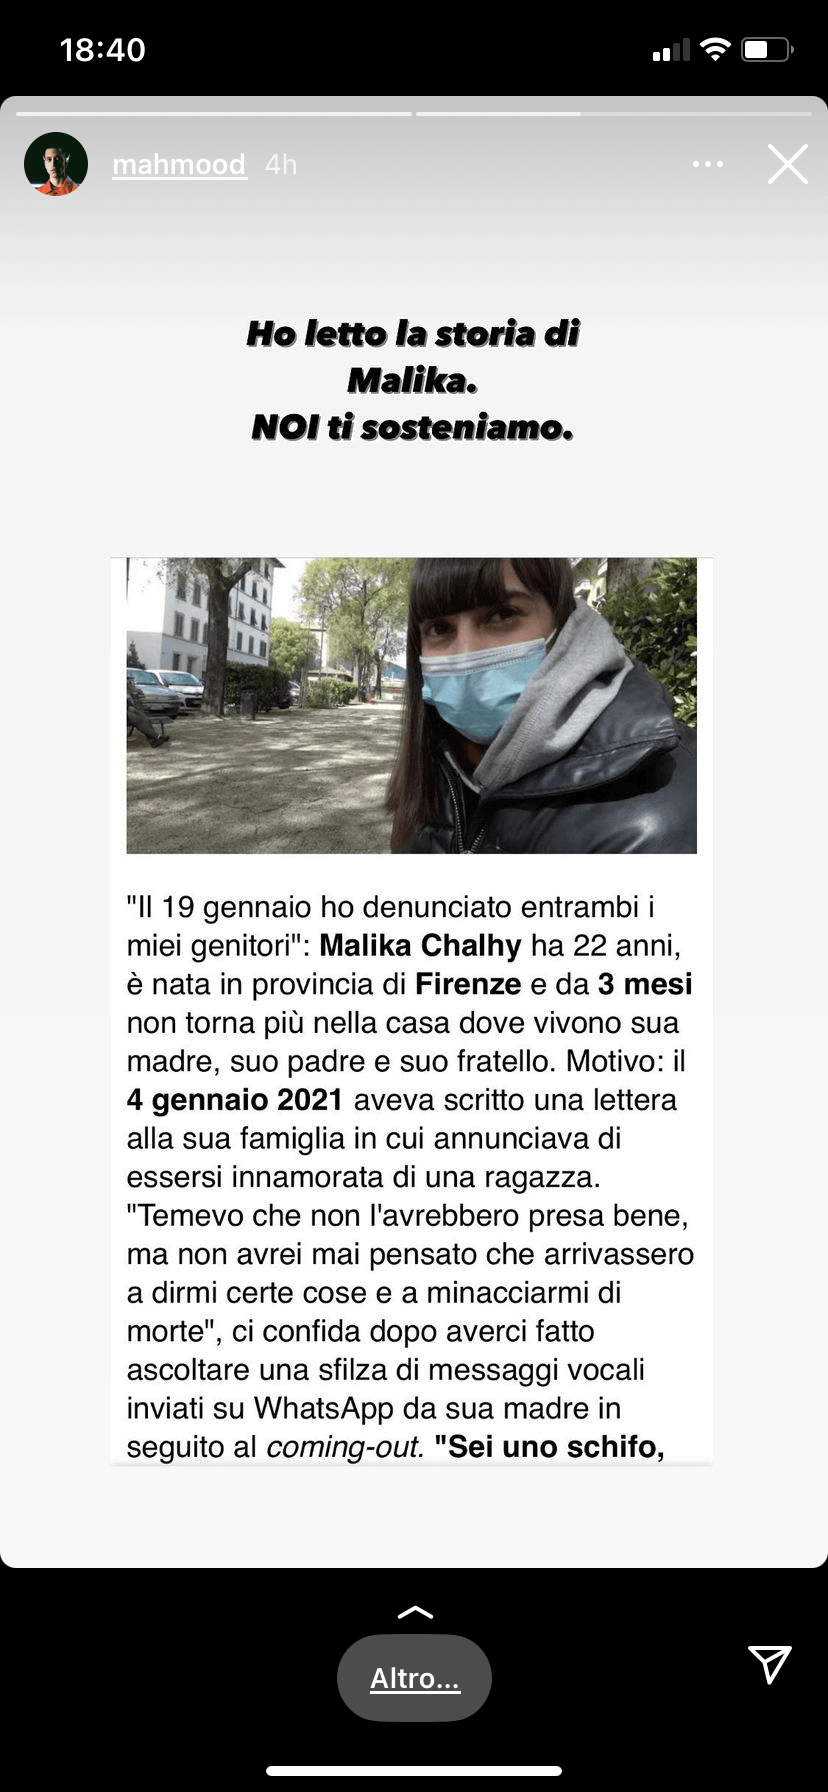 Firenze, il sindaco Nardella sostiene il DDL Zan: "Non possiamo rimandare, è una battaglia di civiltà" - Mahmood Malika 1 - Gay.it